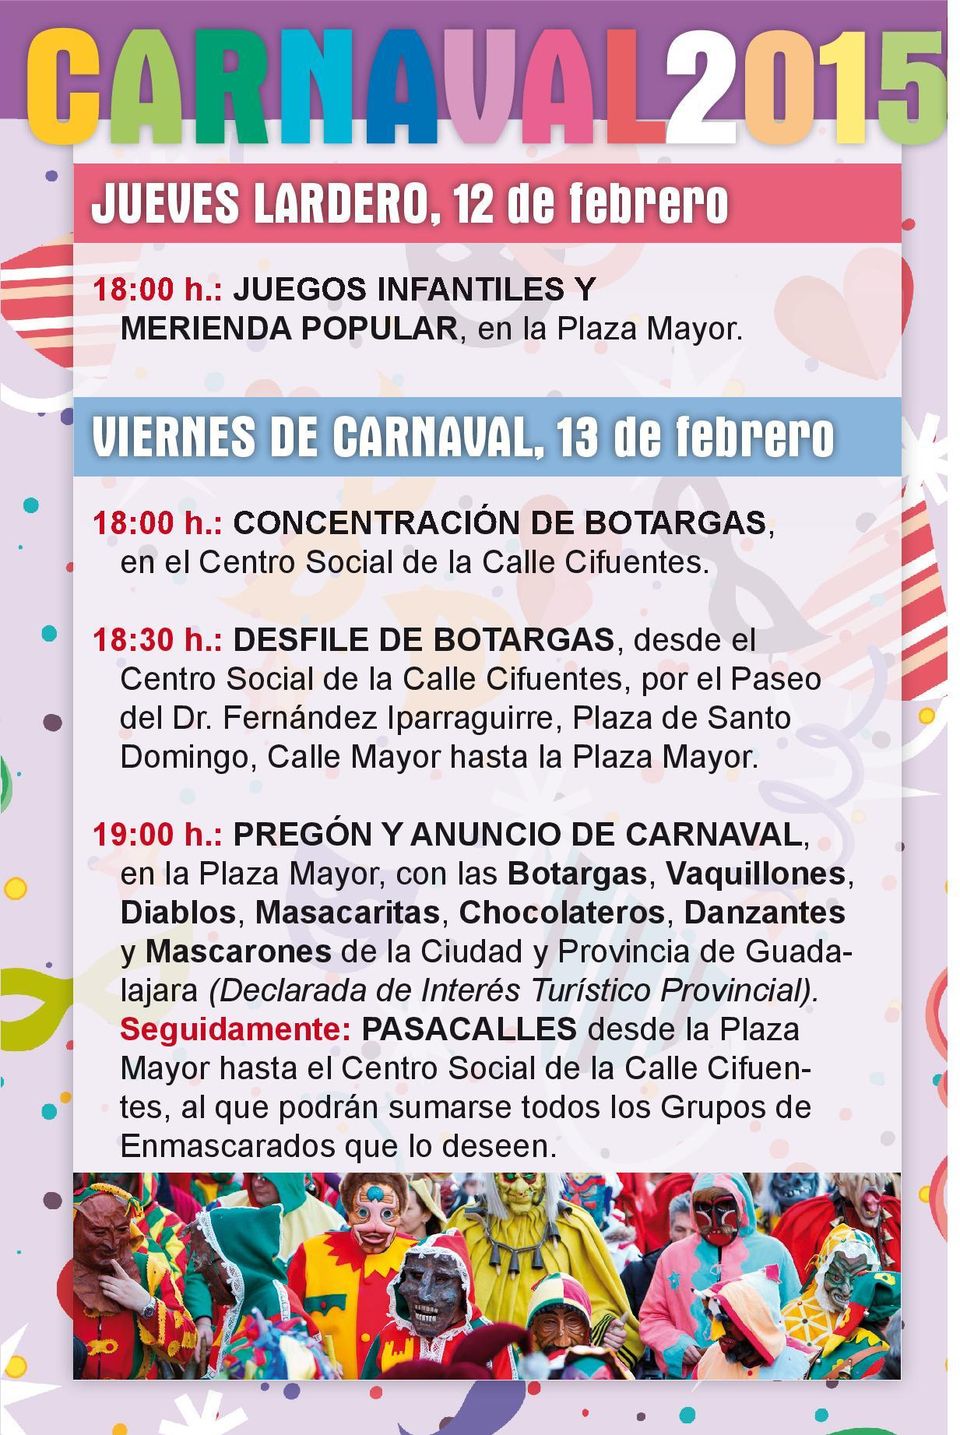 Fernández Iparraguirre, Plaza de Santo Domingo, Calle Mayor hasta la Plaza Mayor. 19:00 h.